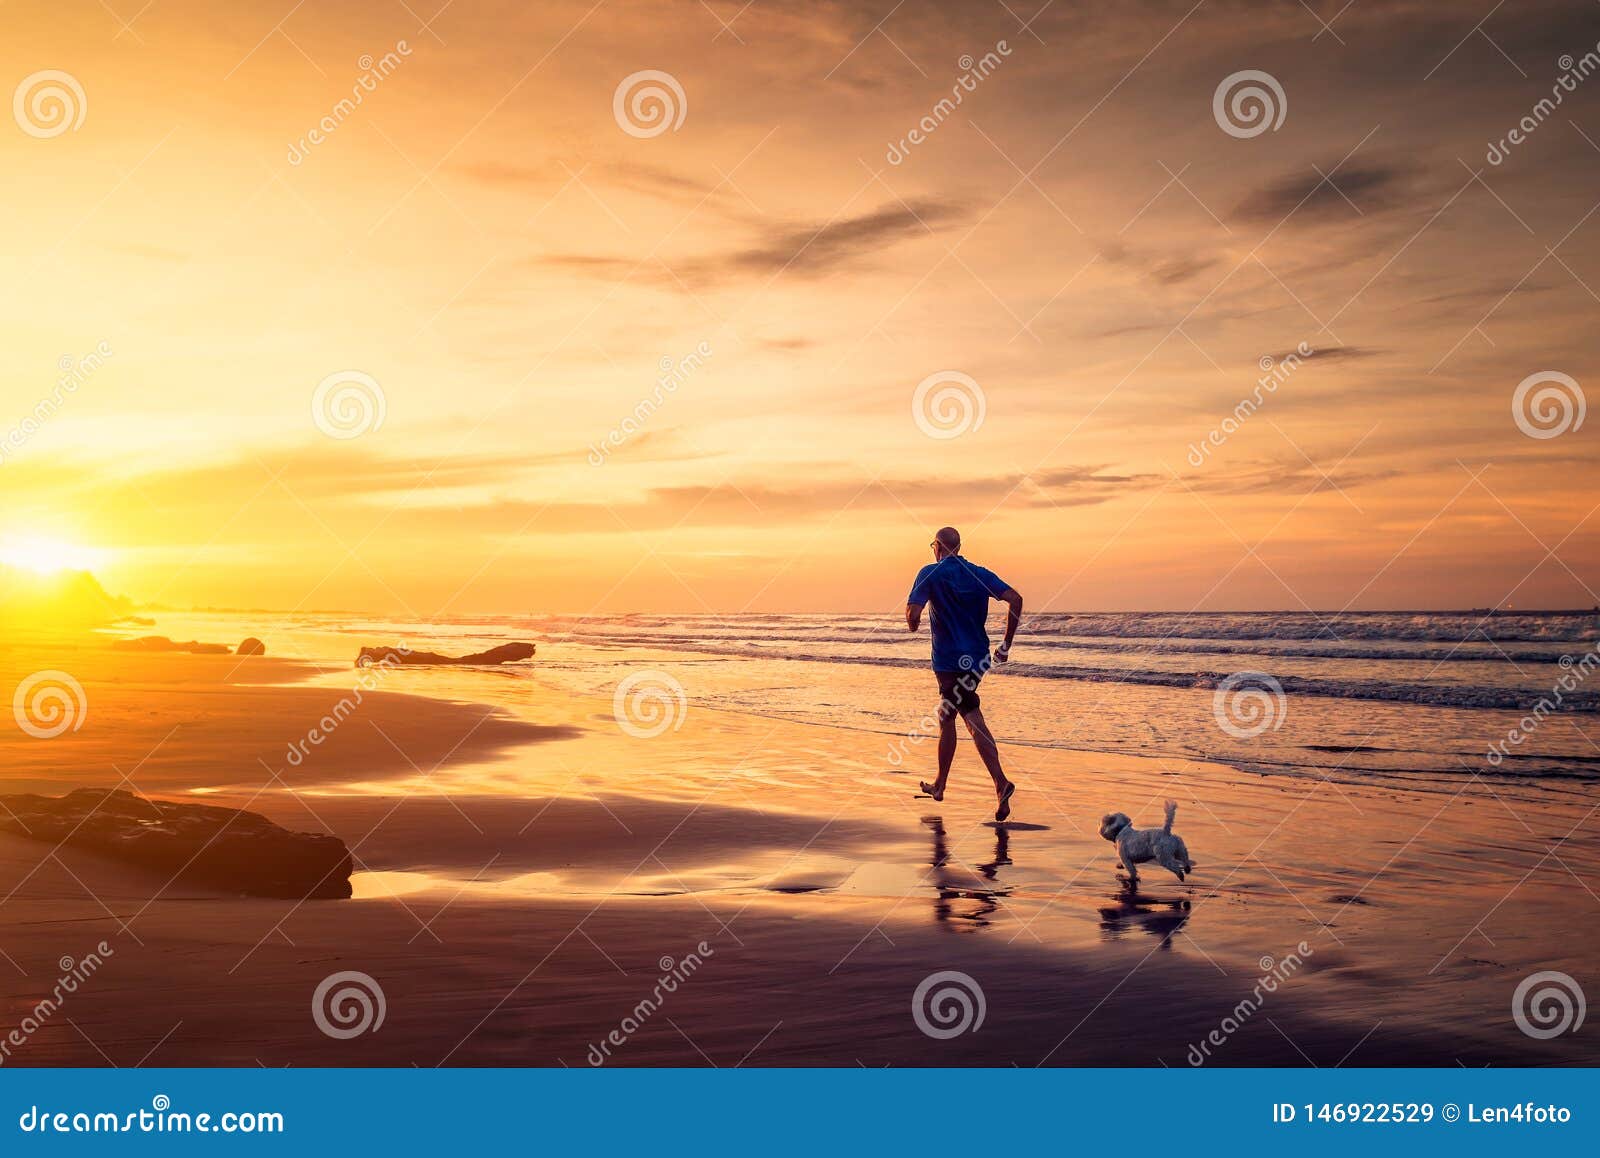 O homem e o cão pequeno estão correndo na praia no tempo do por do sol. O homem adulto e o cão maltês pequeno estão correndo na praia no tempo do por do sol